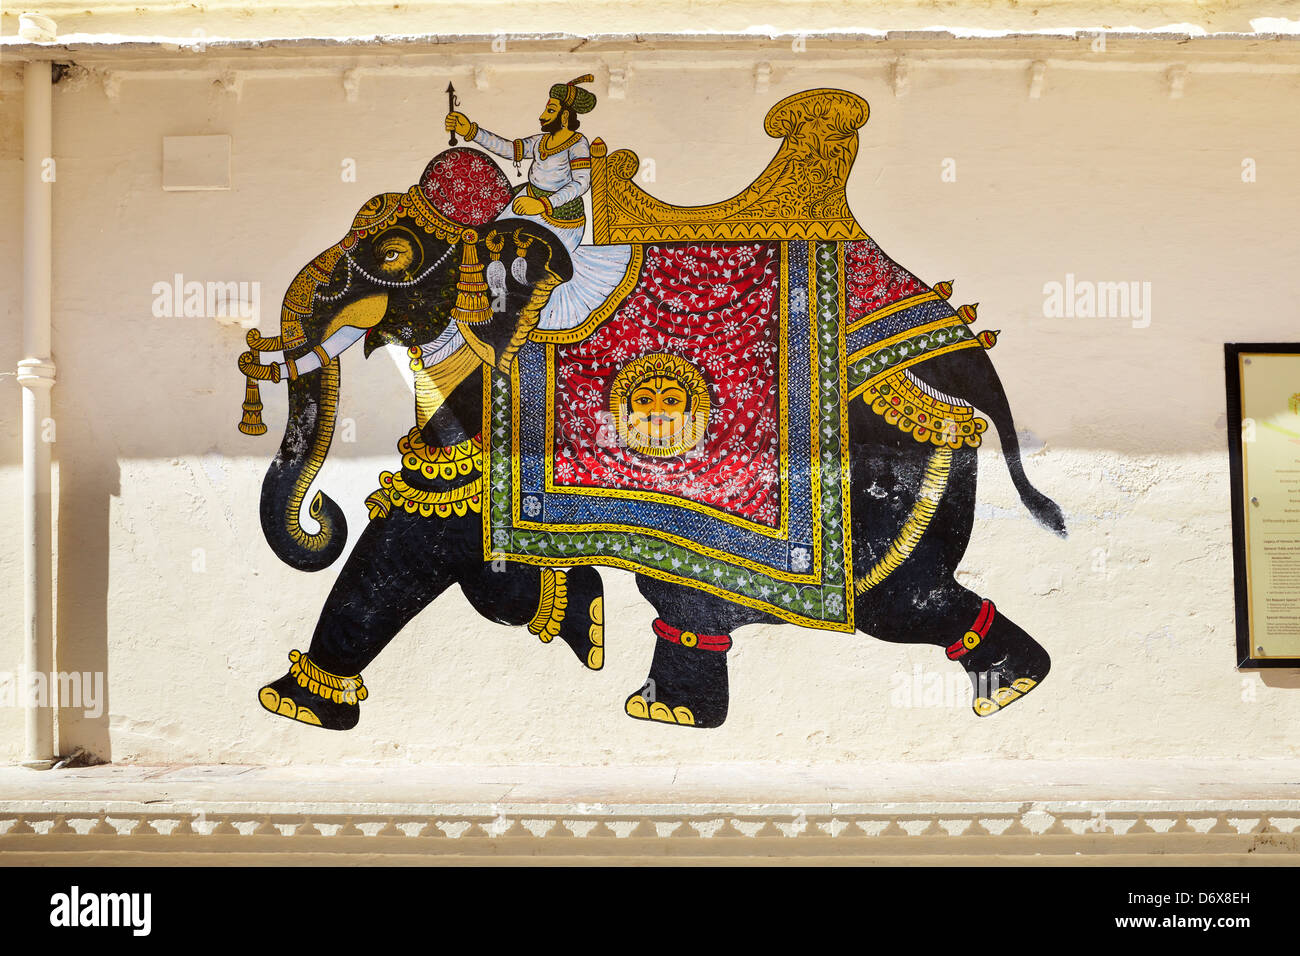 Dipingere con i numeri Adulti Con sede nel Regno Unito Consegna rapida  Elefante indiano colorato P&P GRATUITO nel Regno Unito con sede a Londra -   Italia